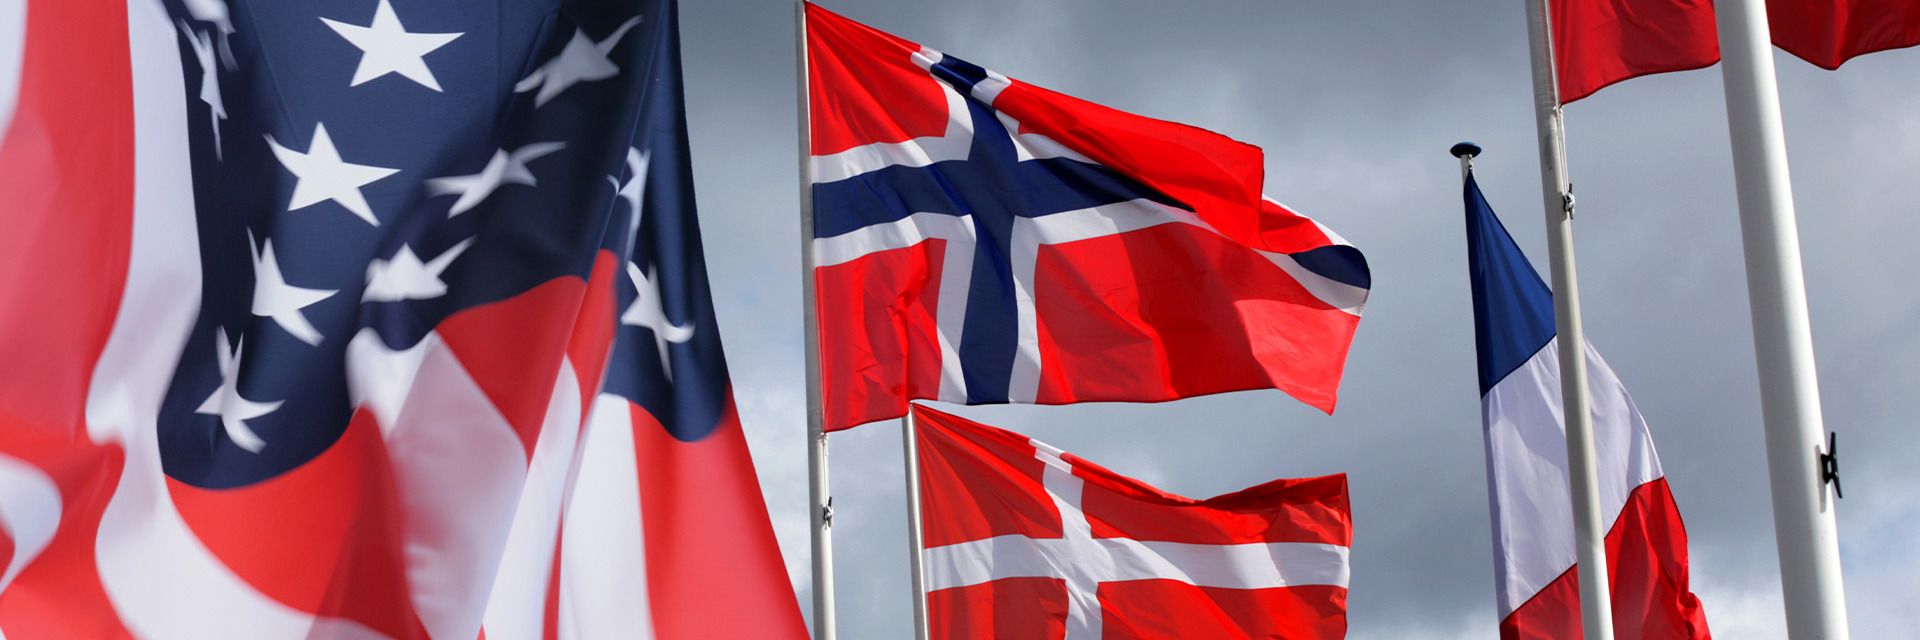 Studierejser på Handelsgymnasiet Silkeborg - flag